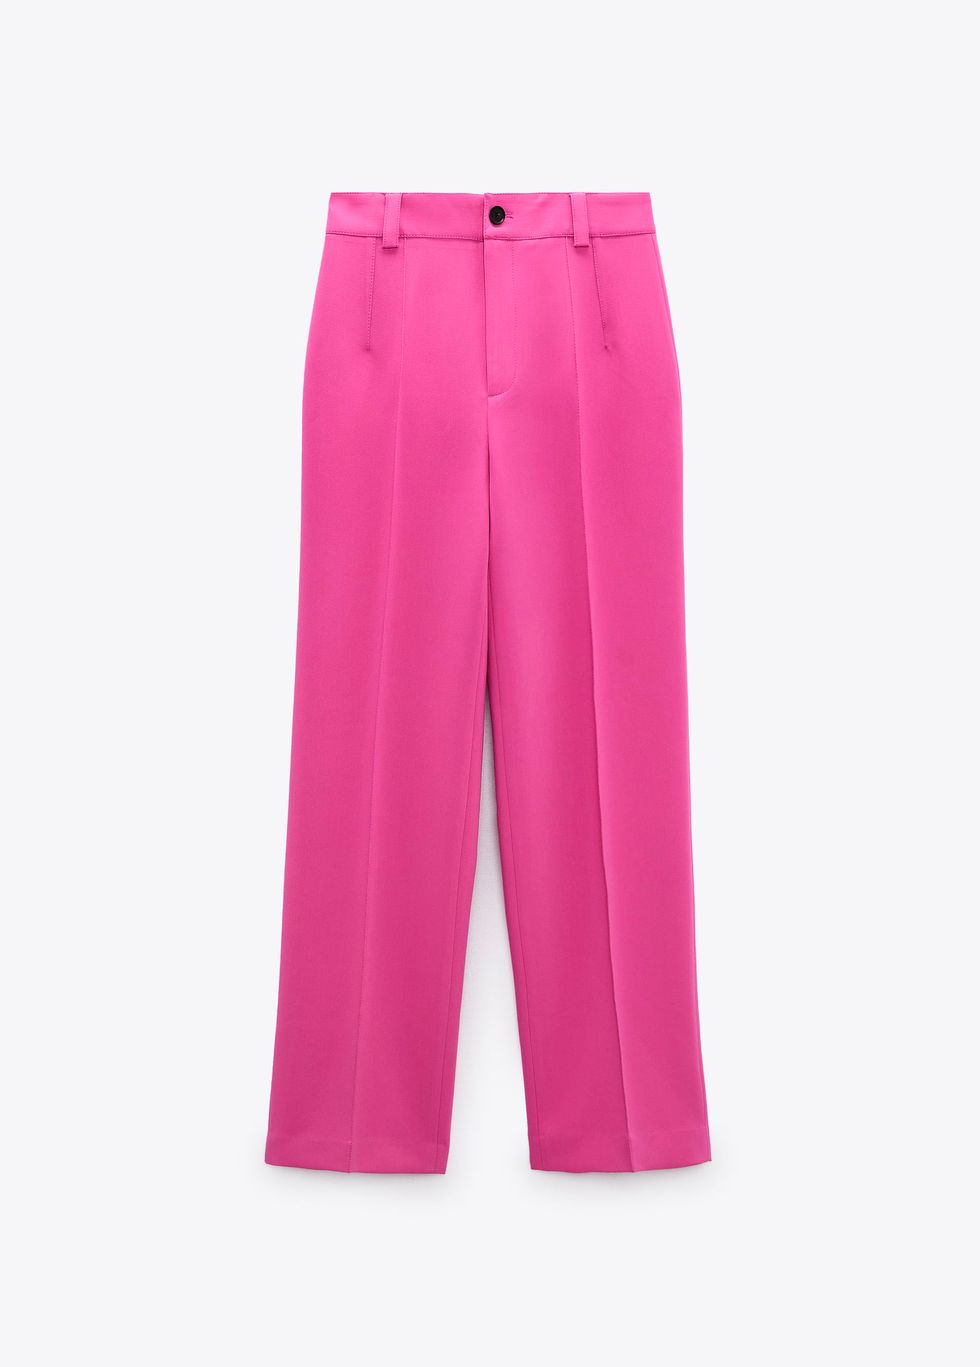 pantalón traje rosa fucsia de zara